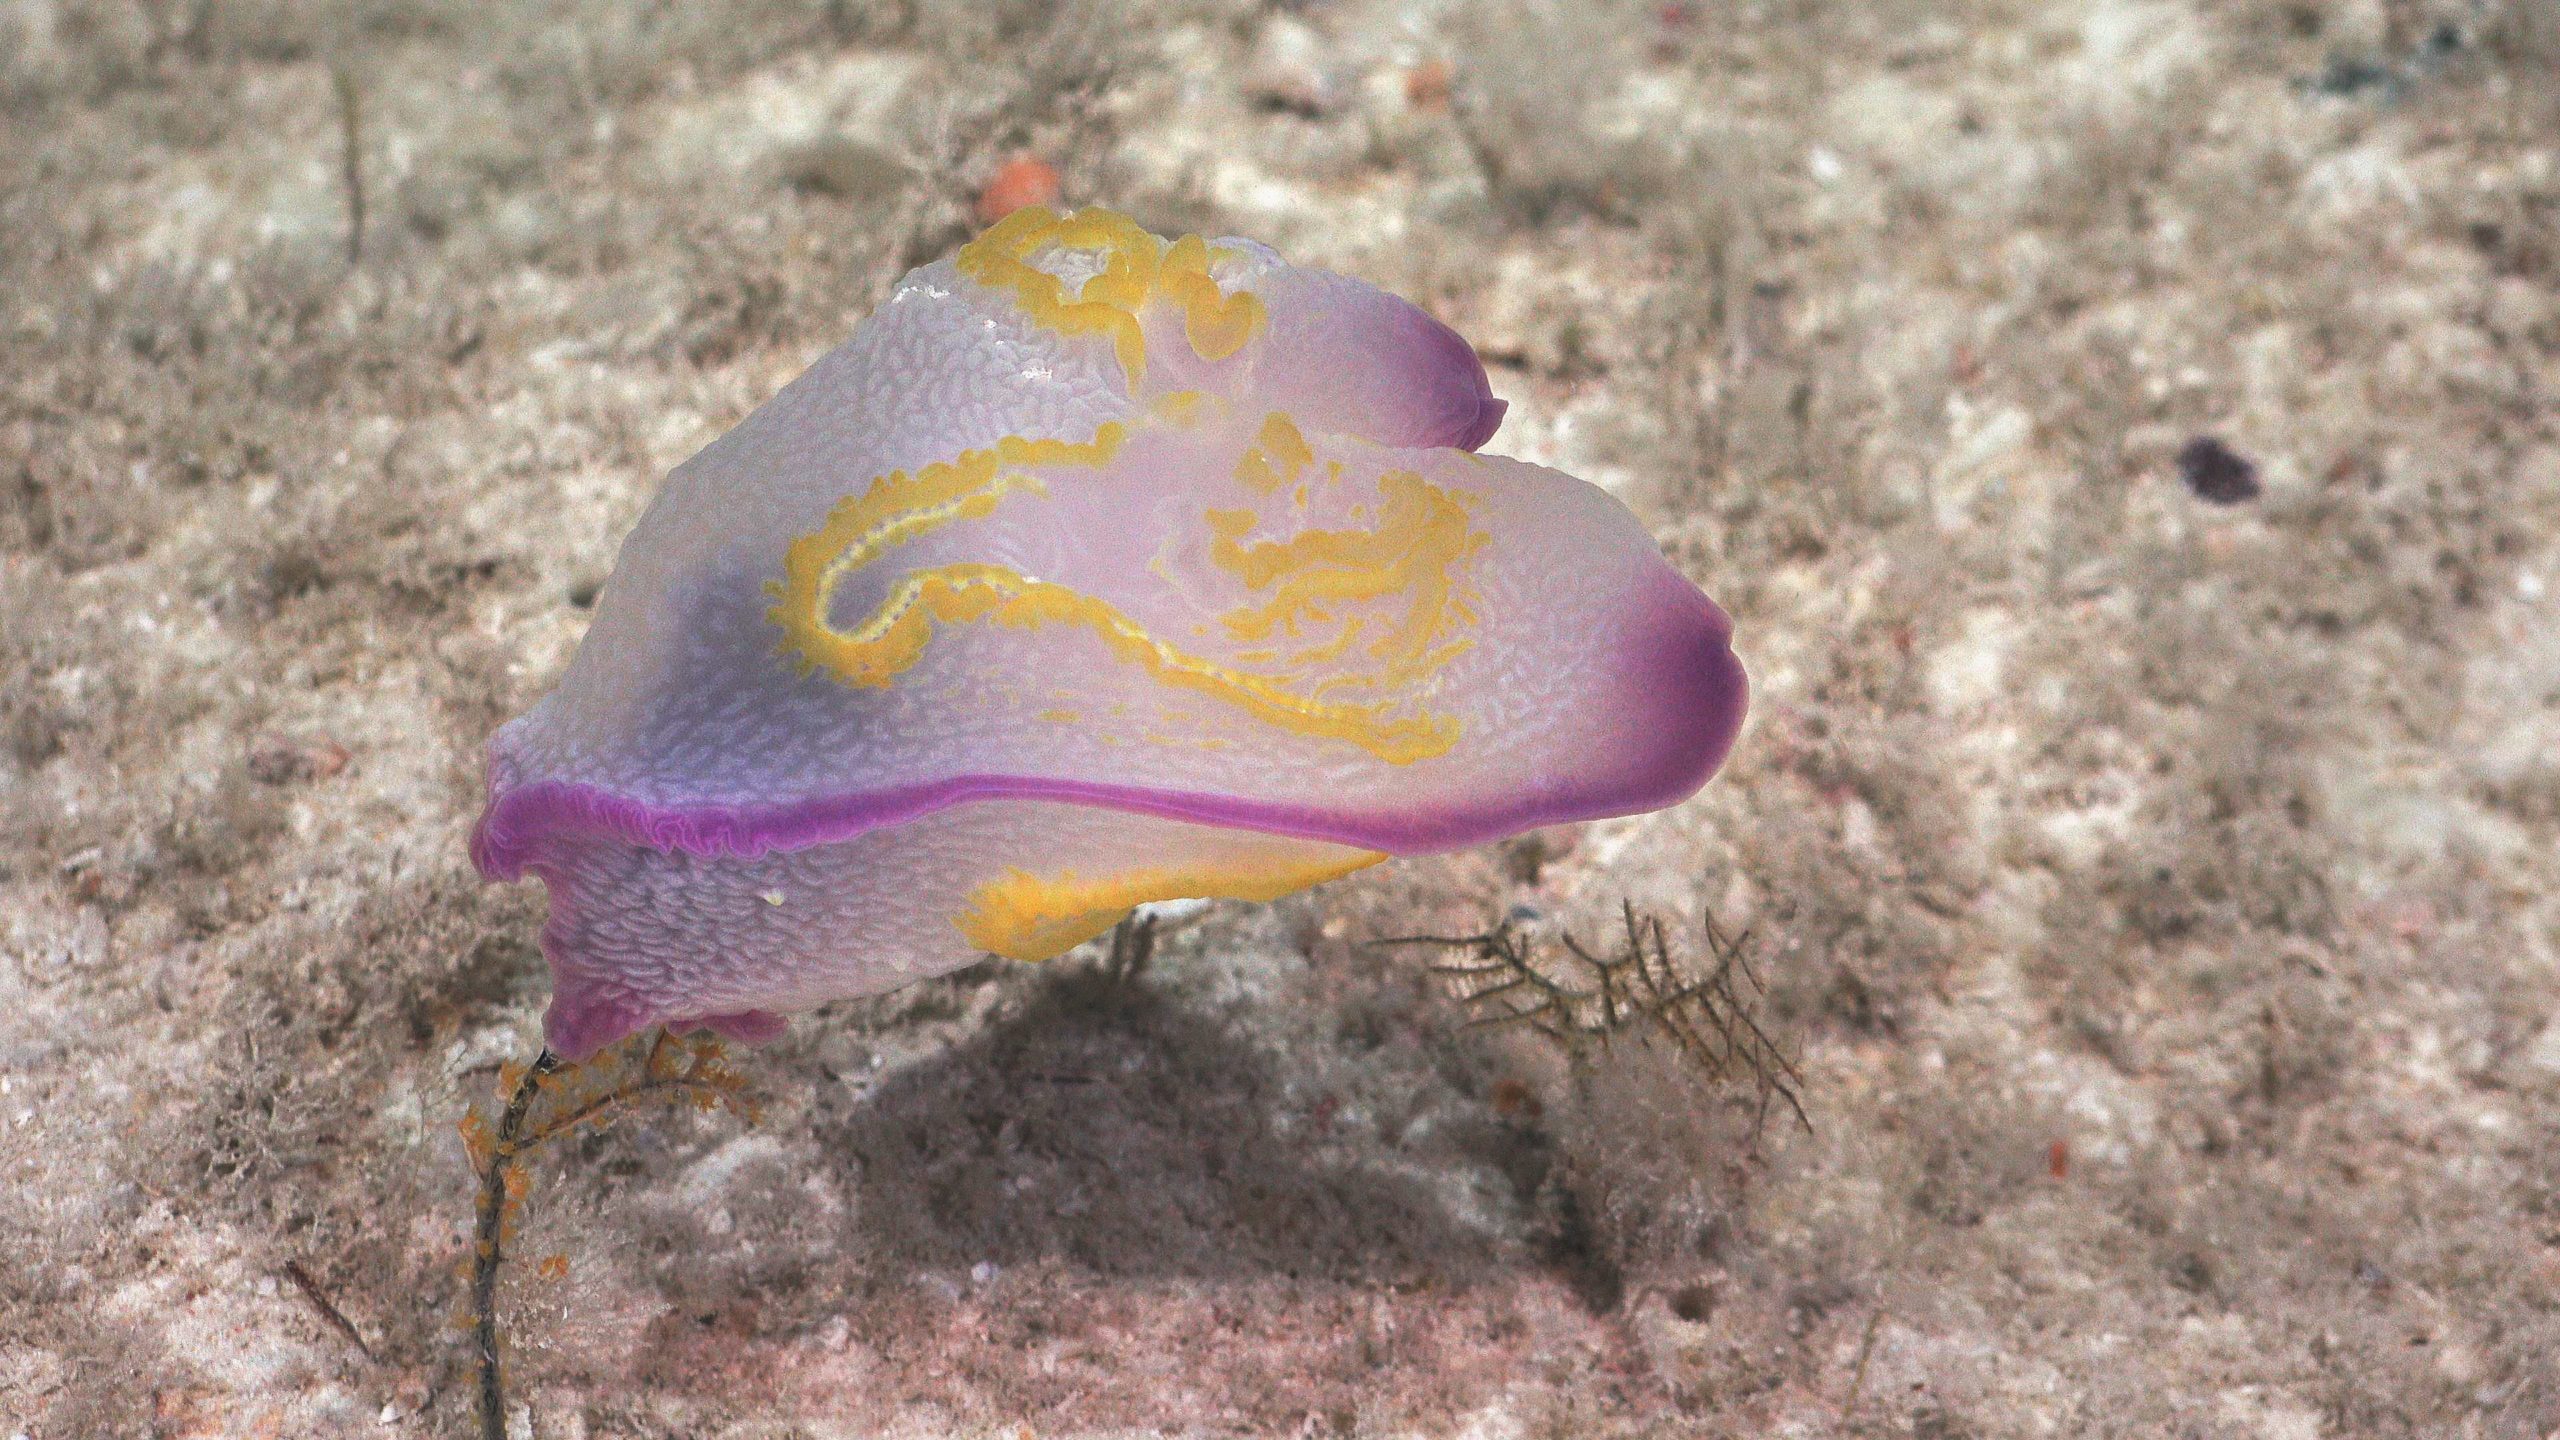 A Benthic ctenophore (Photo: Schmidt Ocean Institute)